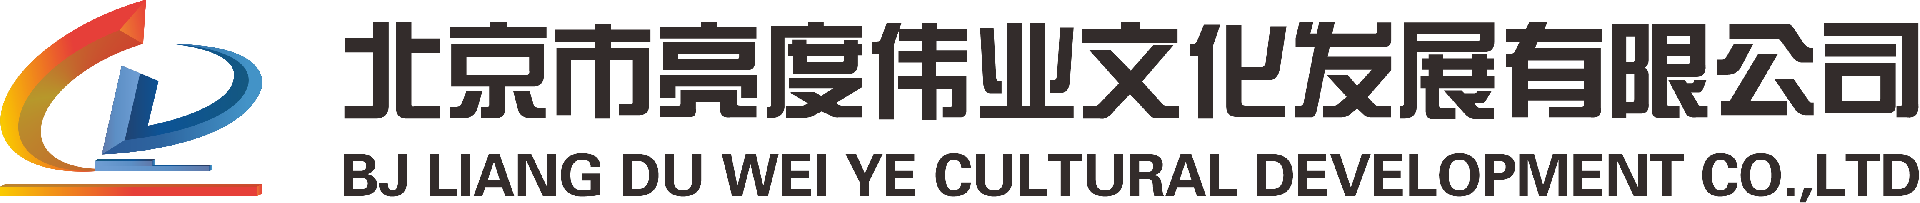 智慧标识-北京市亮度伟业文化发展有限公司-北京市亮度伟业文化发展有限公司